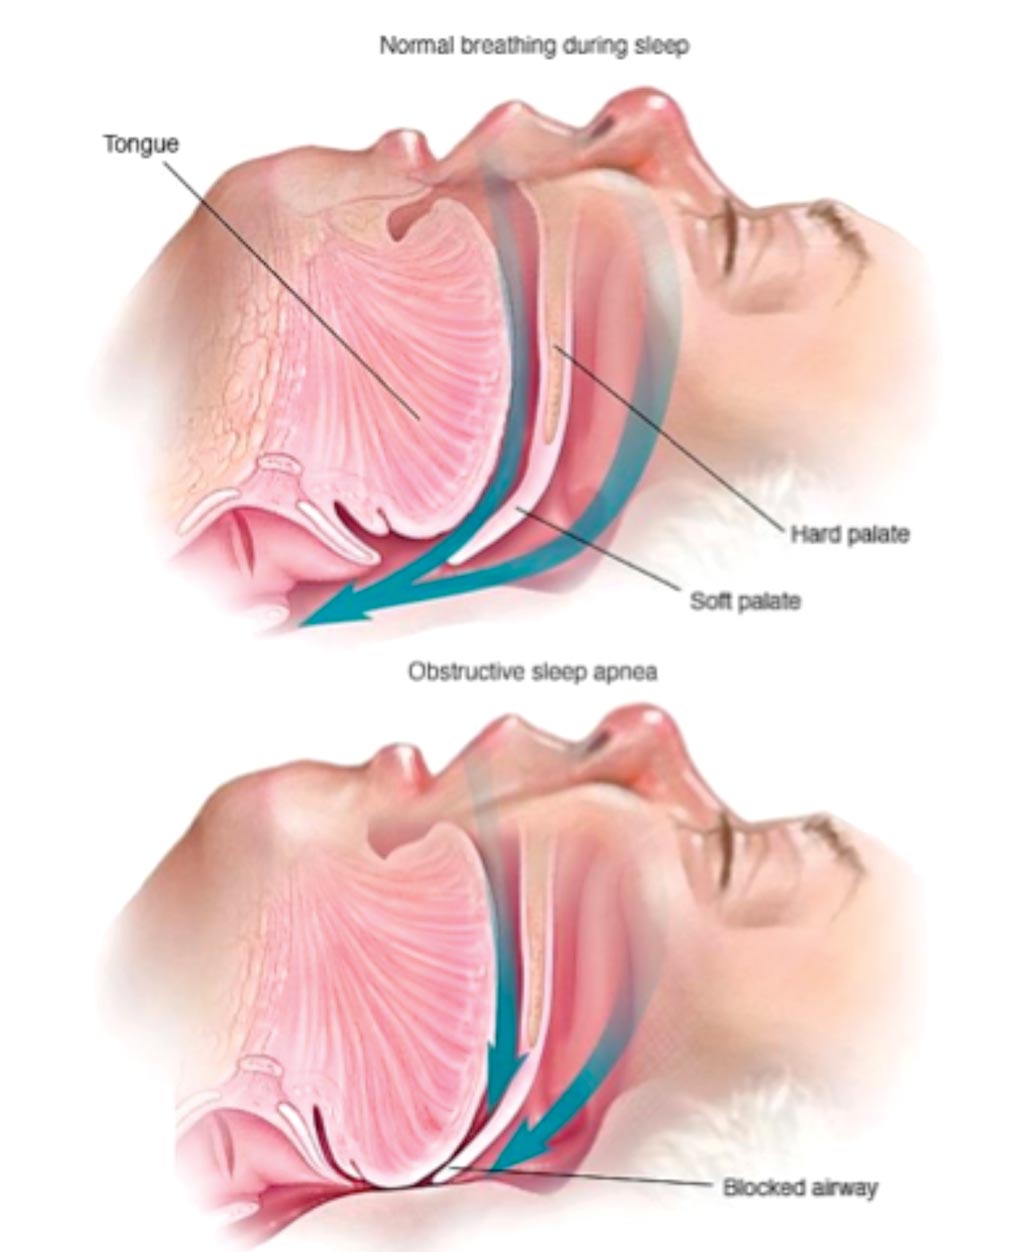 Иллюстрация обструктивного апноэ во сне по сравнению с нормальным дыханием во время сна (фото предоставлено клиникой Майо).